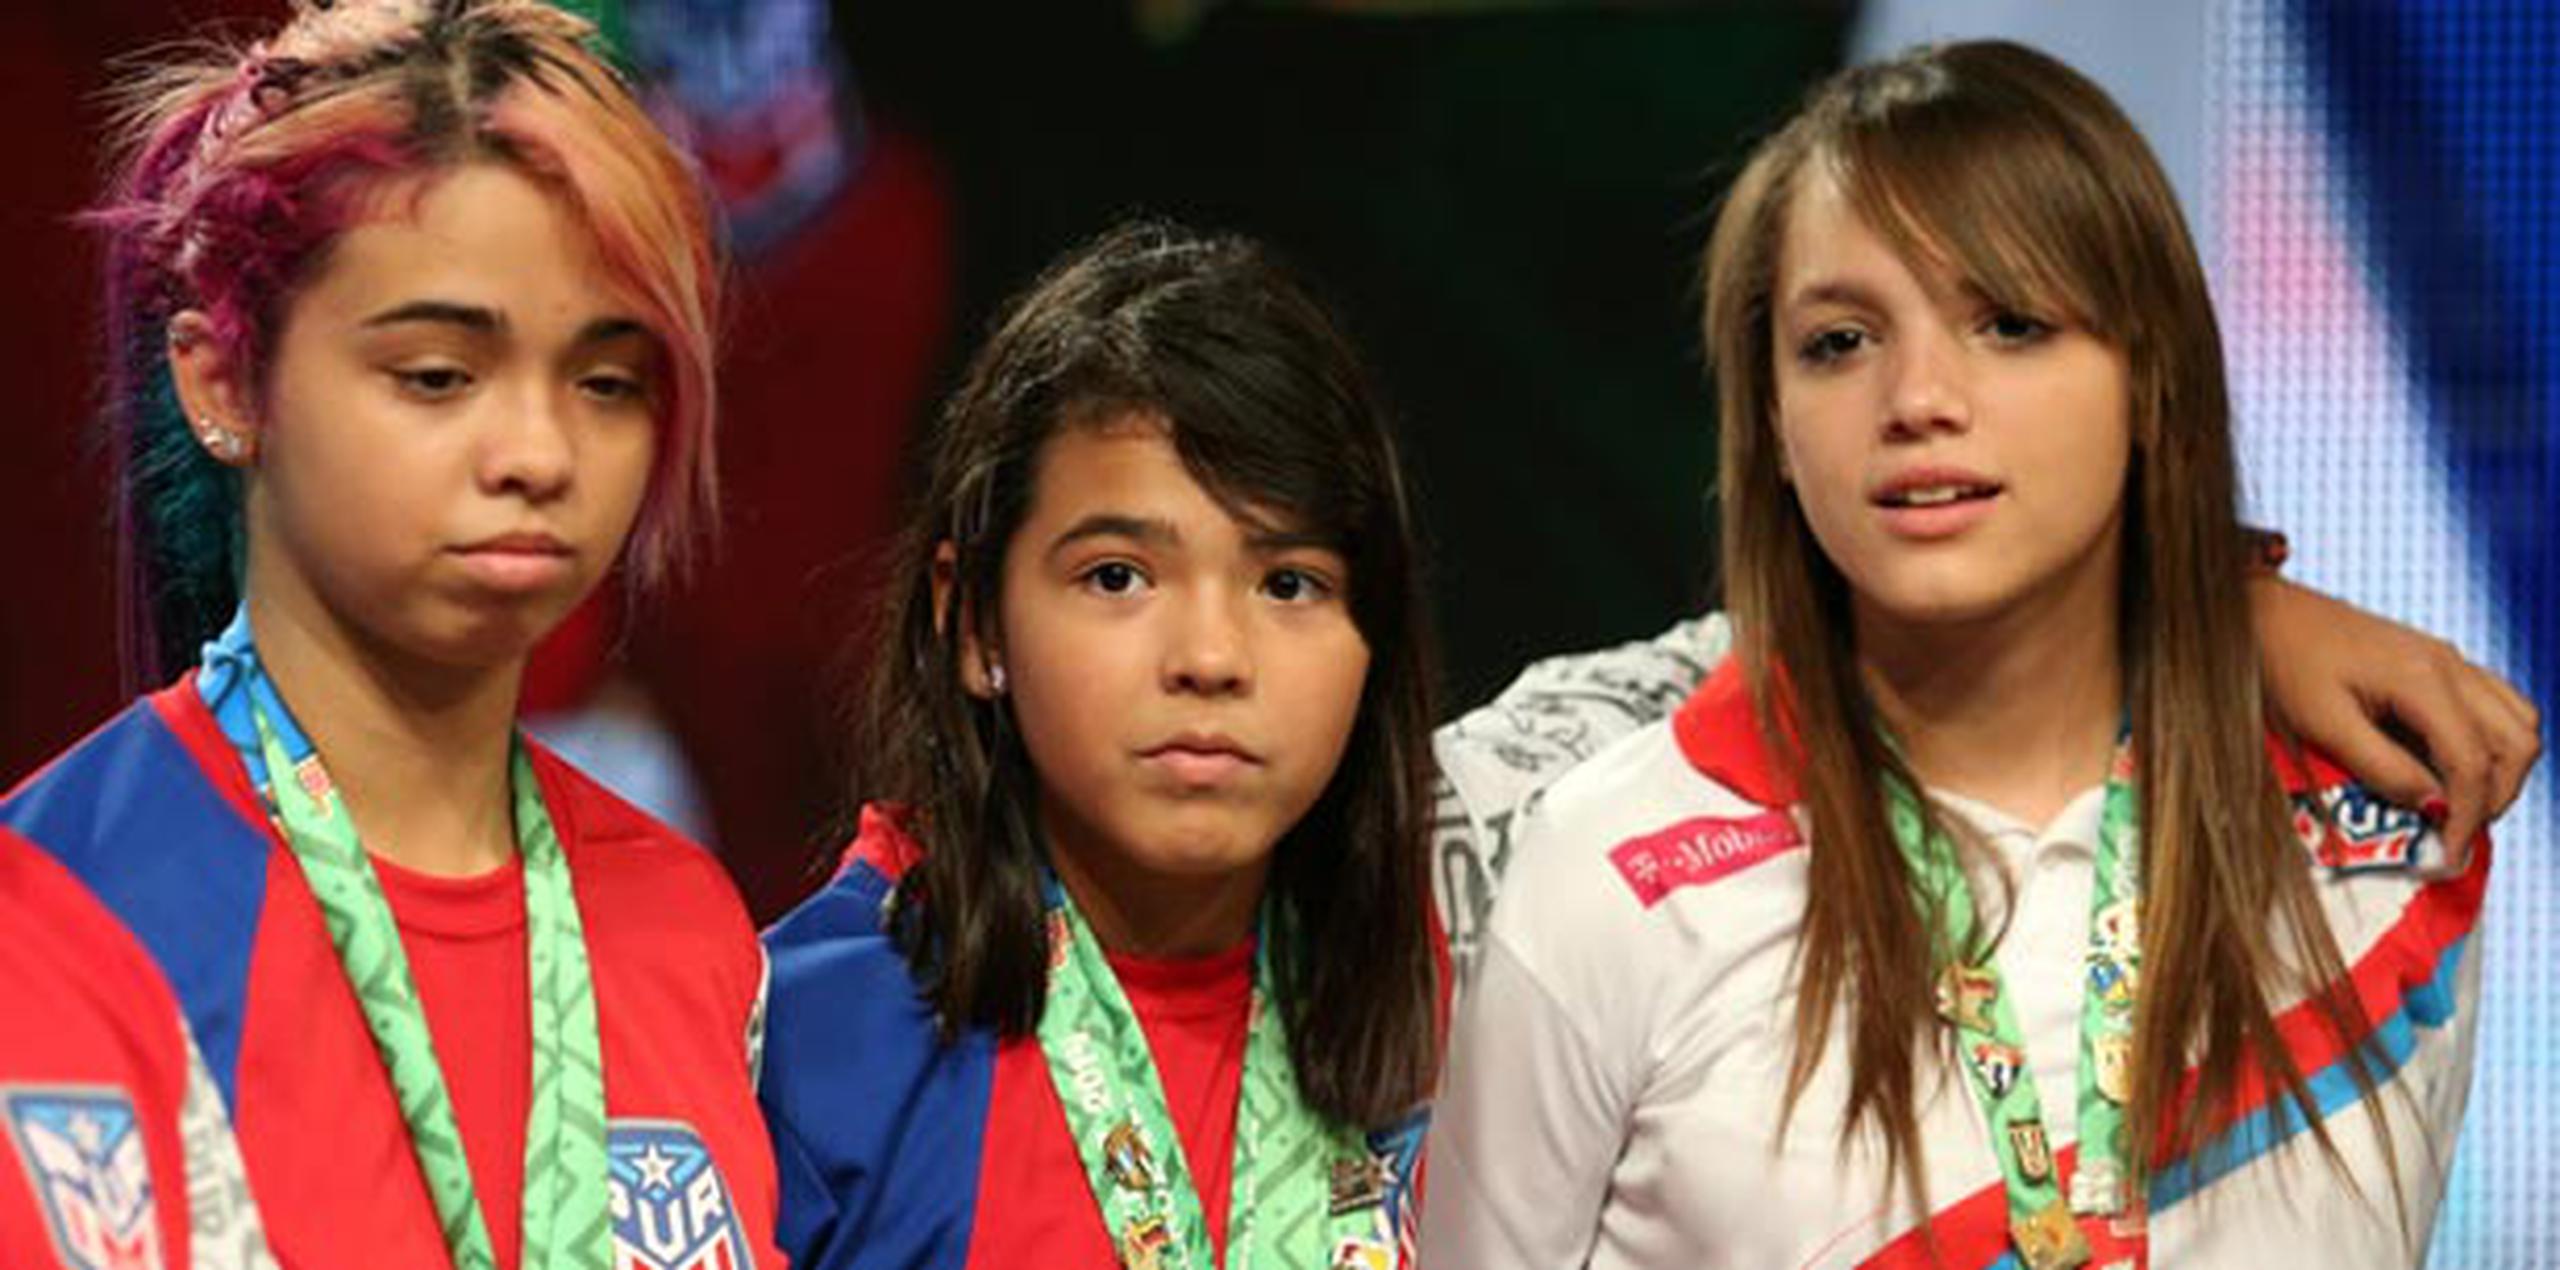 Melanie y Adriana Díaz, junto con Daniely Ríos, son tres de las cuatro jugadoras que representan a Puerto Rico el Campeonato Mundial Juvenil que se celebra en Shanghái. (juan.martinez@gfrmedia.com)